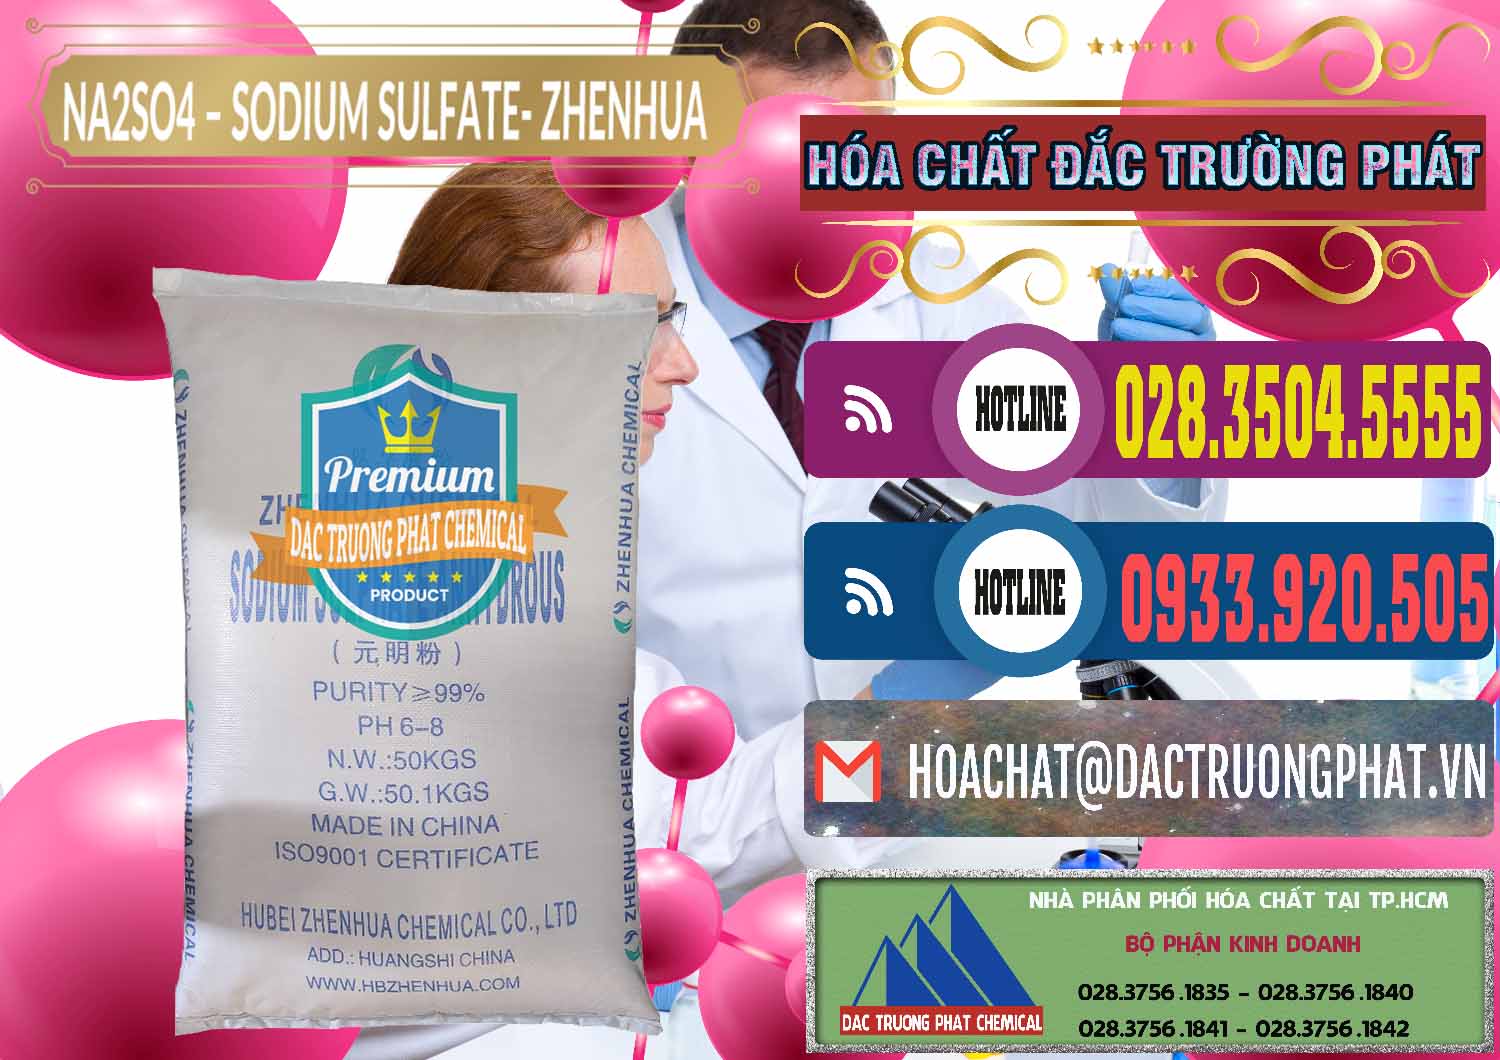 Chuyên cung ứng & bán Sodium Sulphate - Muối Sunfat Na2SO4 Zhenhua Trung Quốc China - 0101 - Nơi chuyên phân phối và nhập khẩu hóa chất tại TP.HCM - muabanhoachat.com.vn